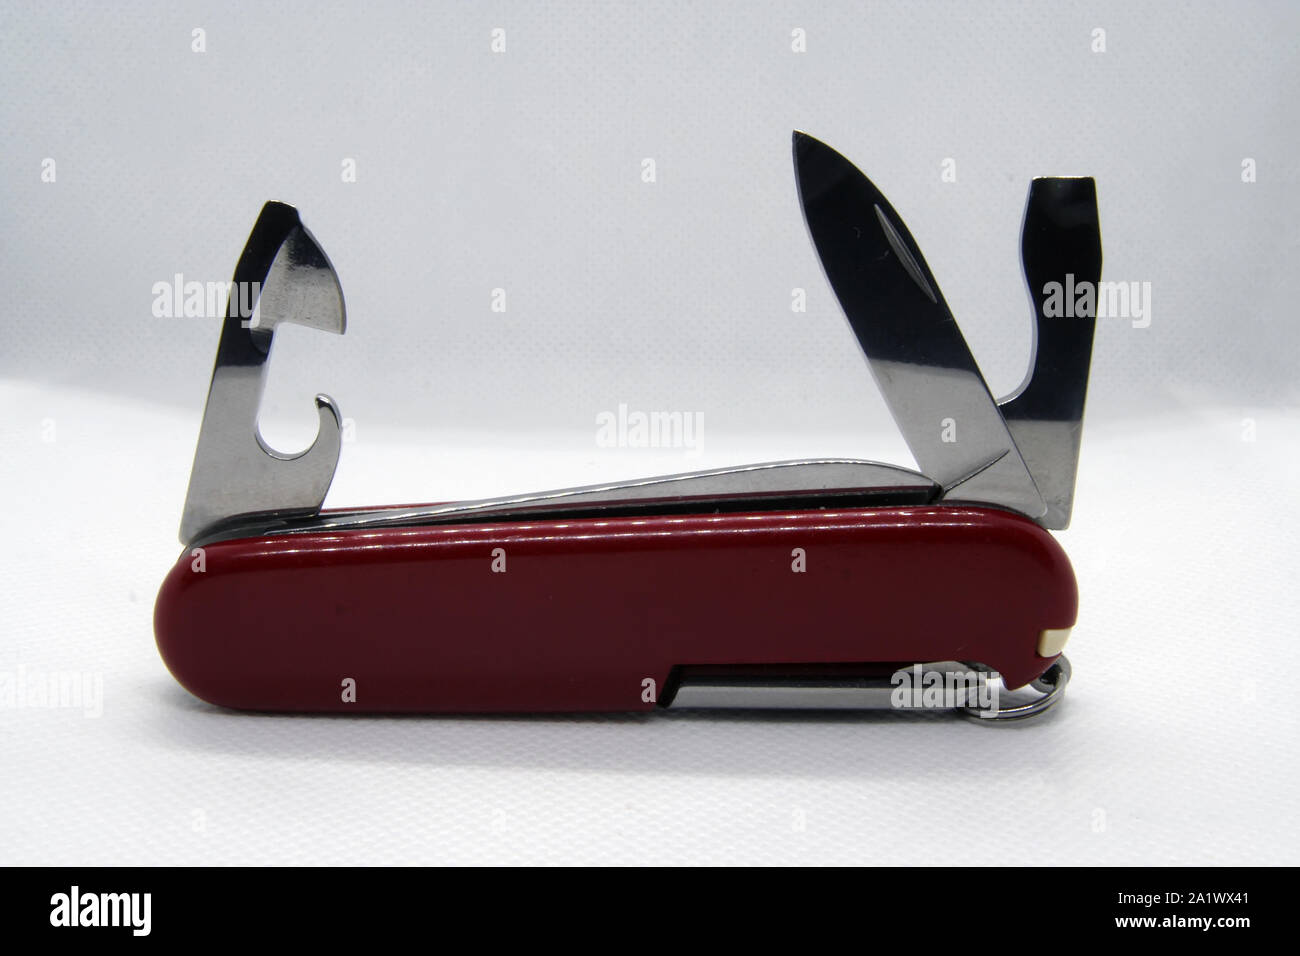 Kleine kompakte Messer. Kompakte Taschenmesser. Handliches Werkzeug Messer. Stockfoto